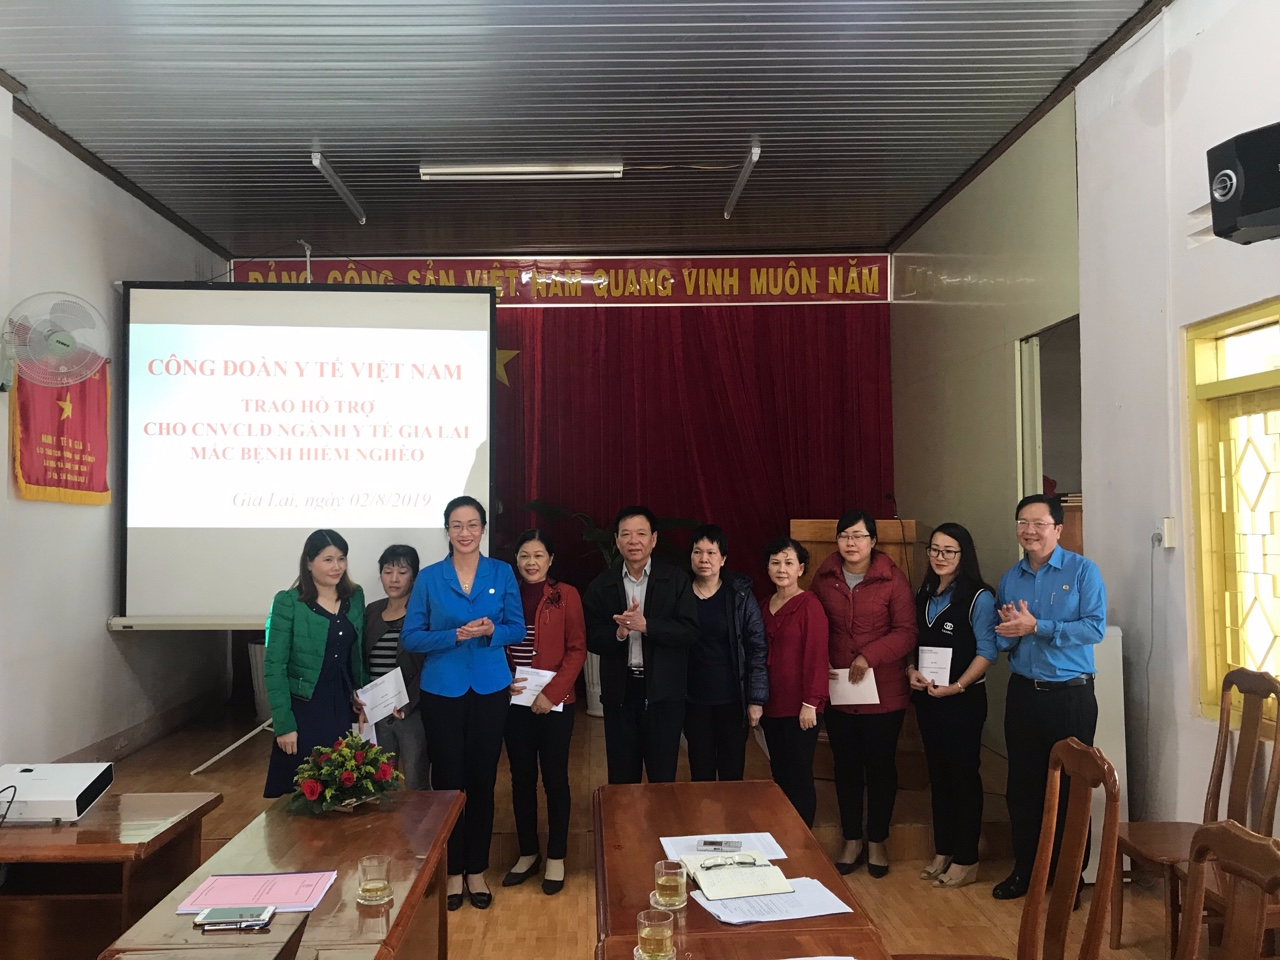 Lãnh đạo Công đoàn Y tế Việt Nam, Sở Y tế tỉnh và LĐLĐ tỉnh Gia Lai trao hỗ trợ cho đoàn viên công đoàn mắc bệnh hiểm nghèo.